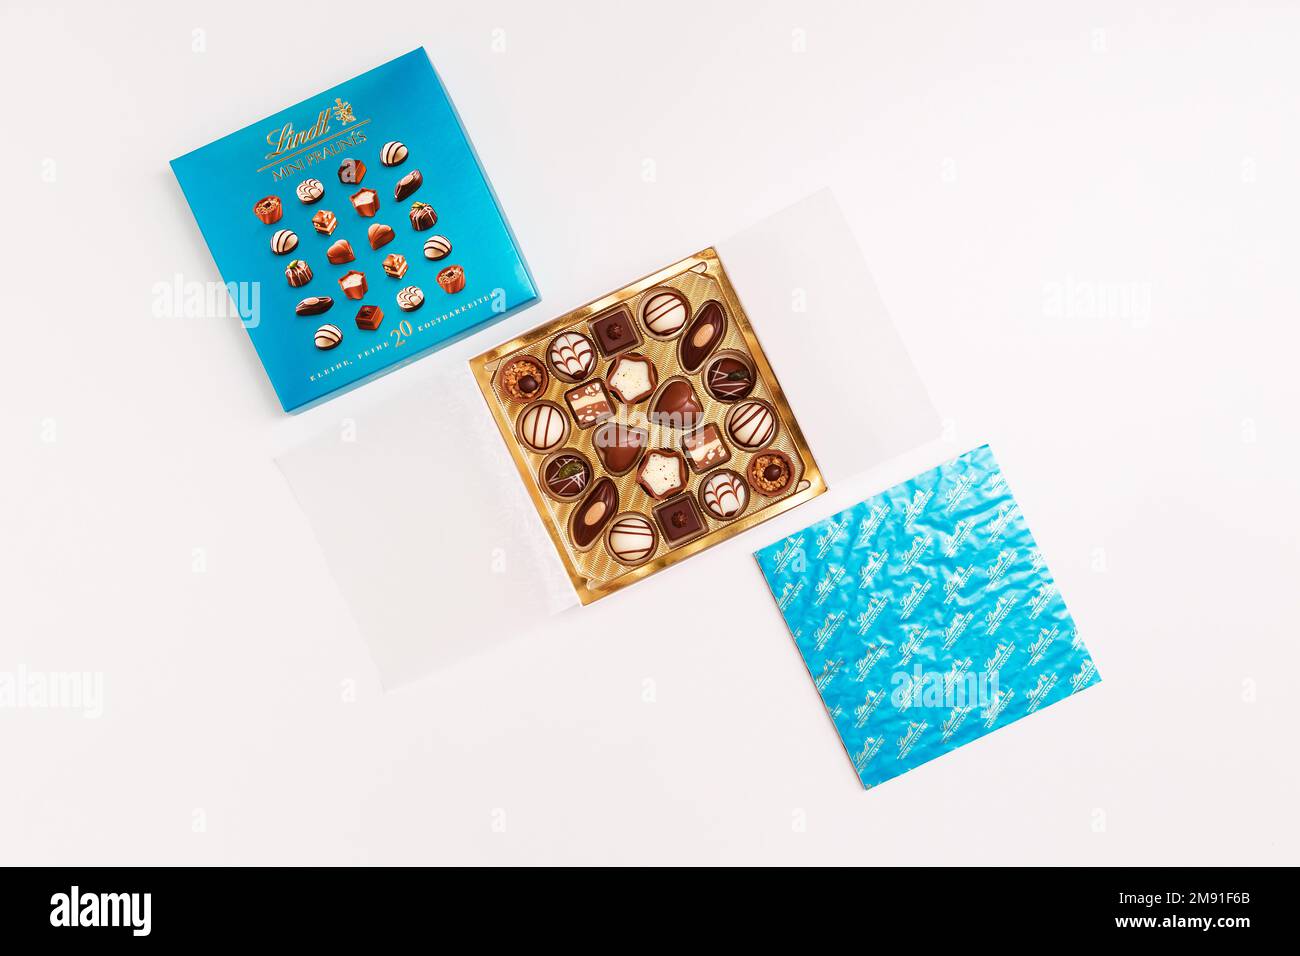 Zurigo, Svizzera - Gennaio 7 2023: Lindt Mini pralines Box. Apri una piccola scatola regalo di caramelle al cioccolato svizzere su sfondo bianco piatto. Foto Stock